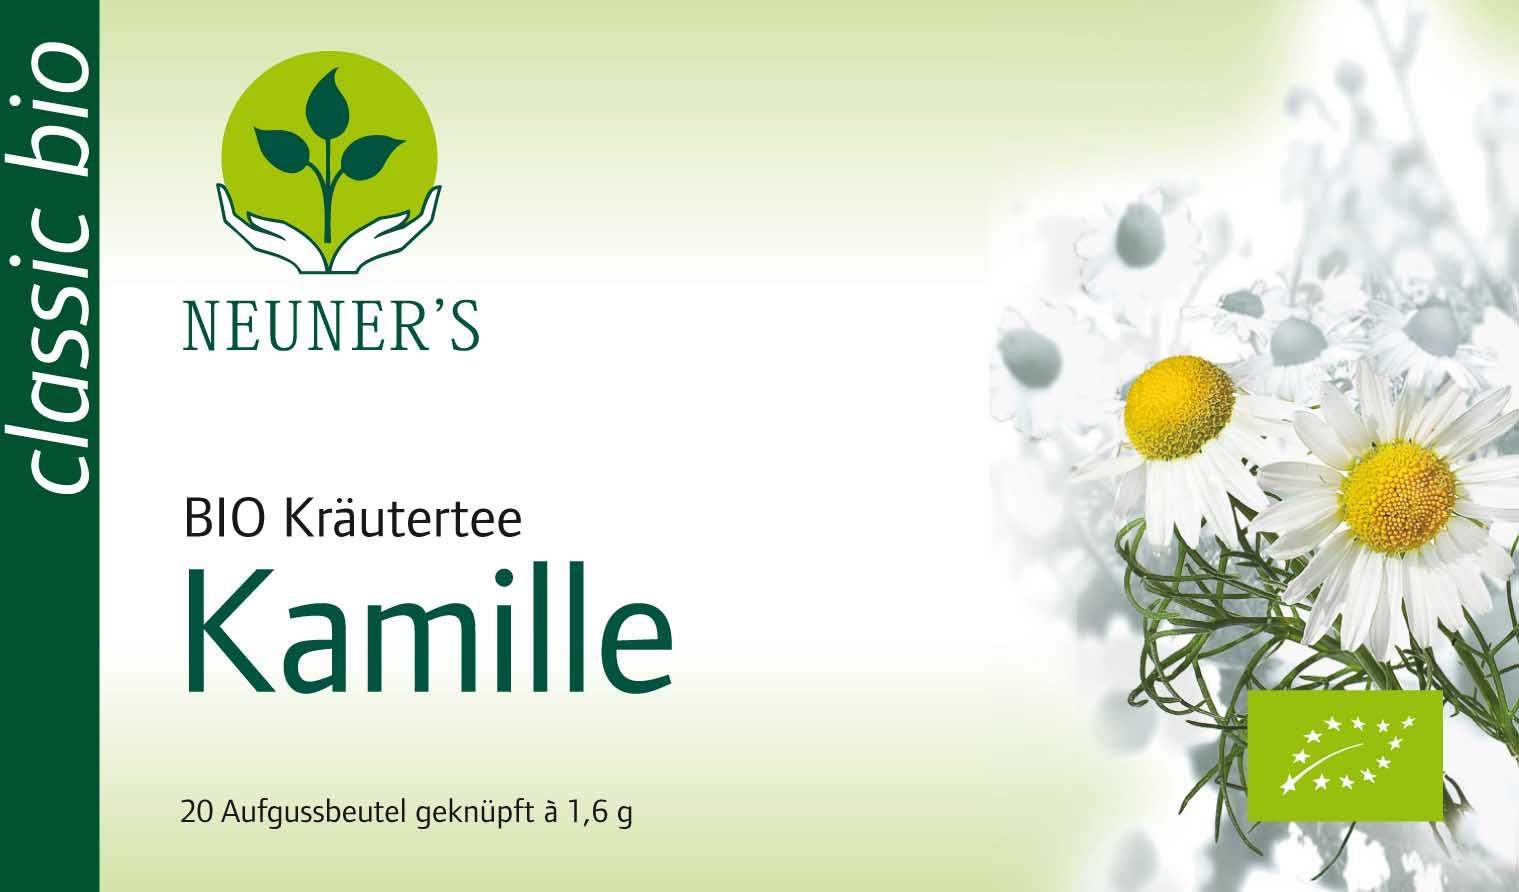 Neuner's Kamille BIO